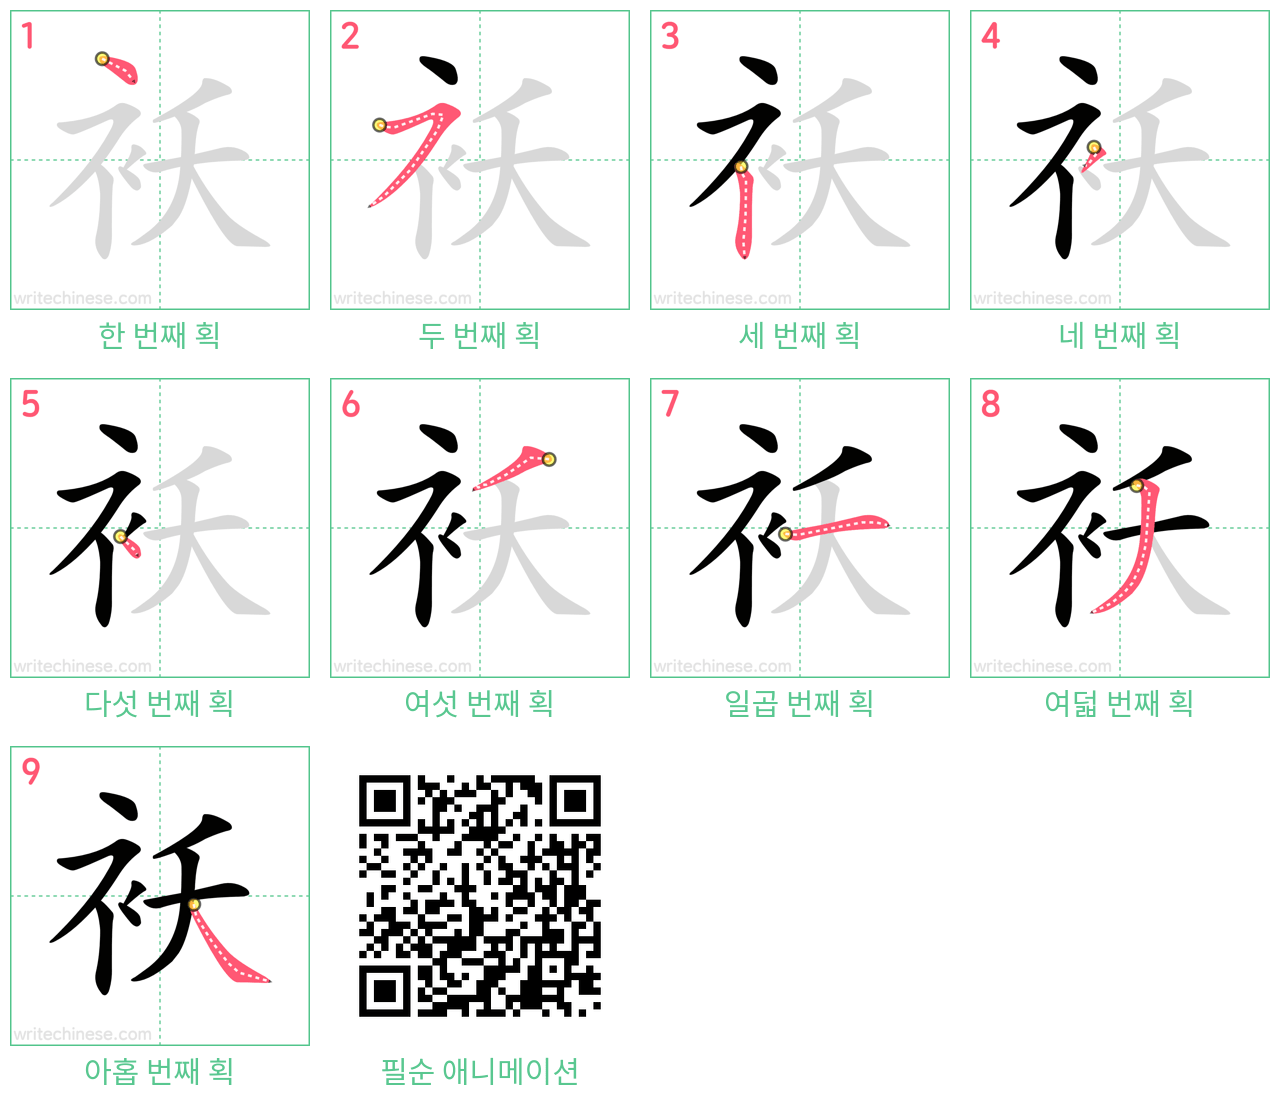 袄 step-by-step stroke order diagrams